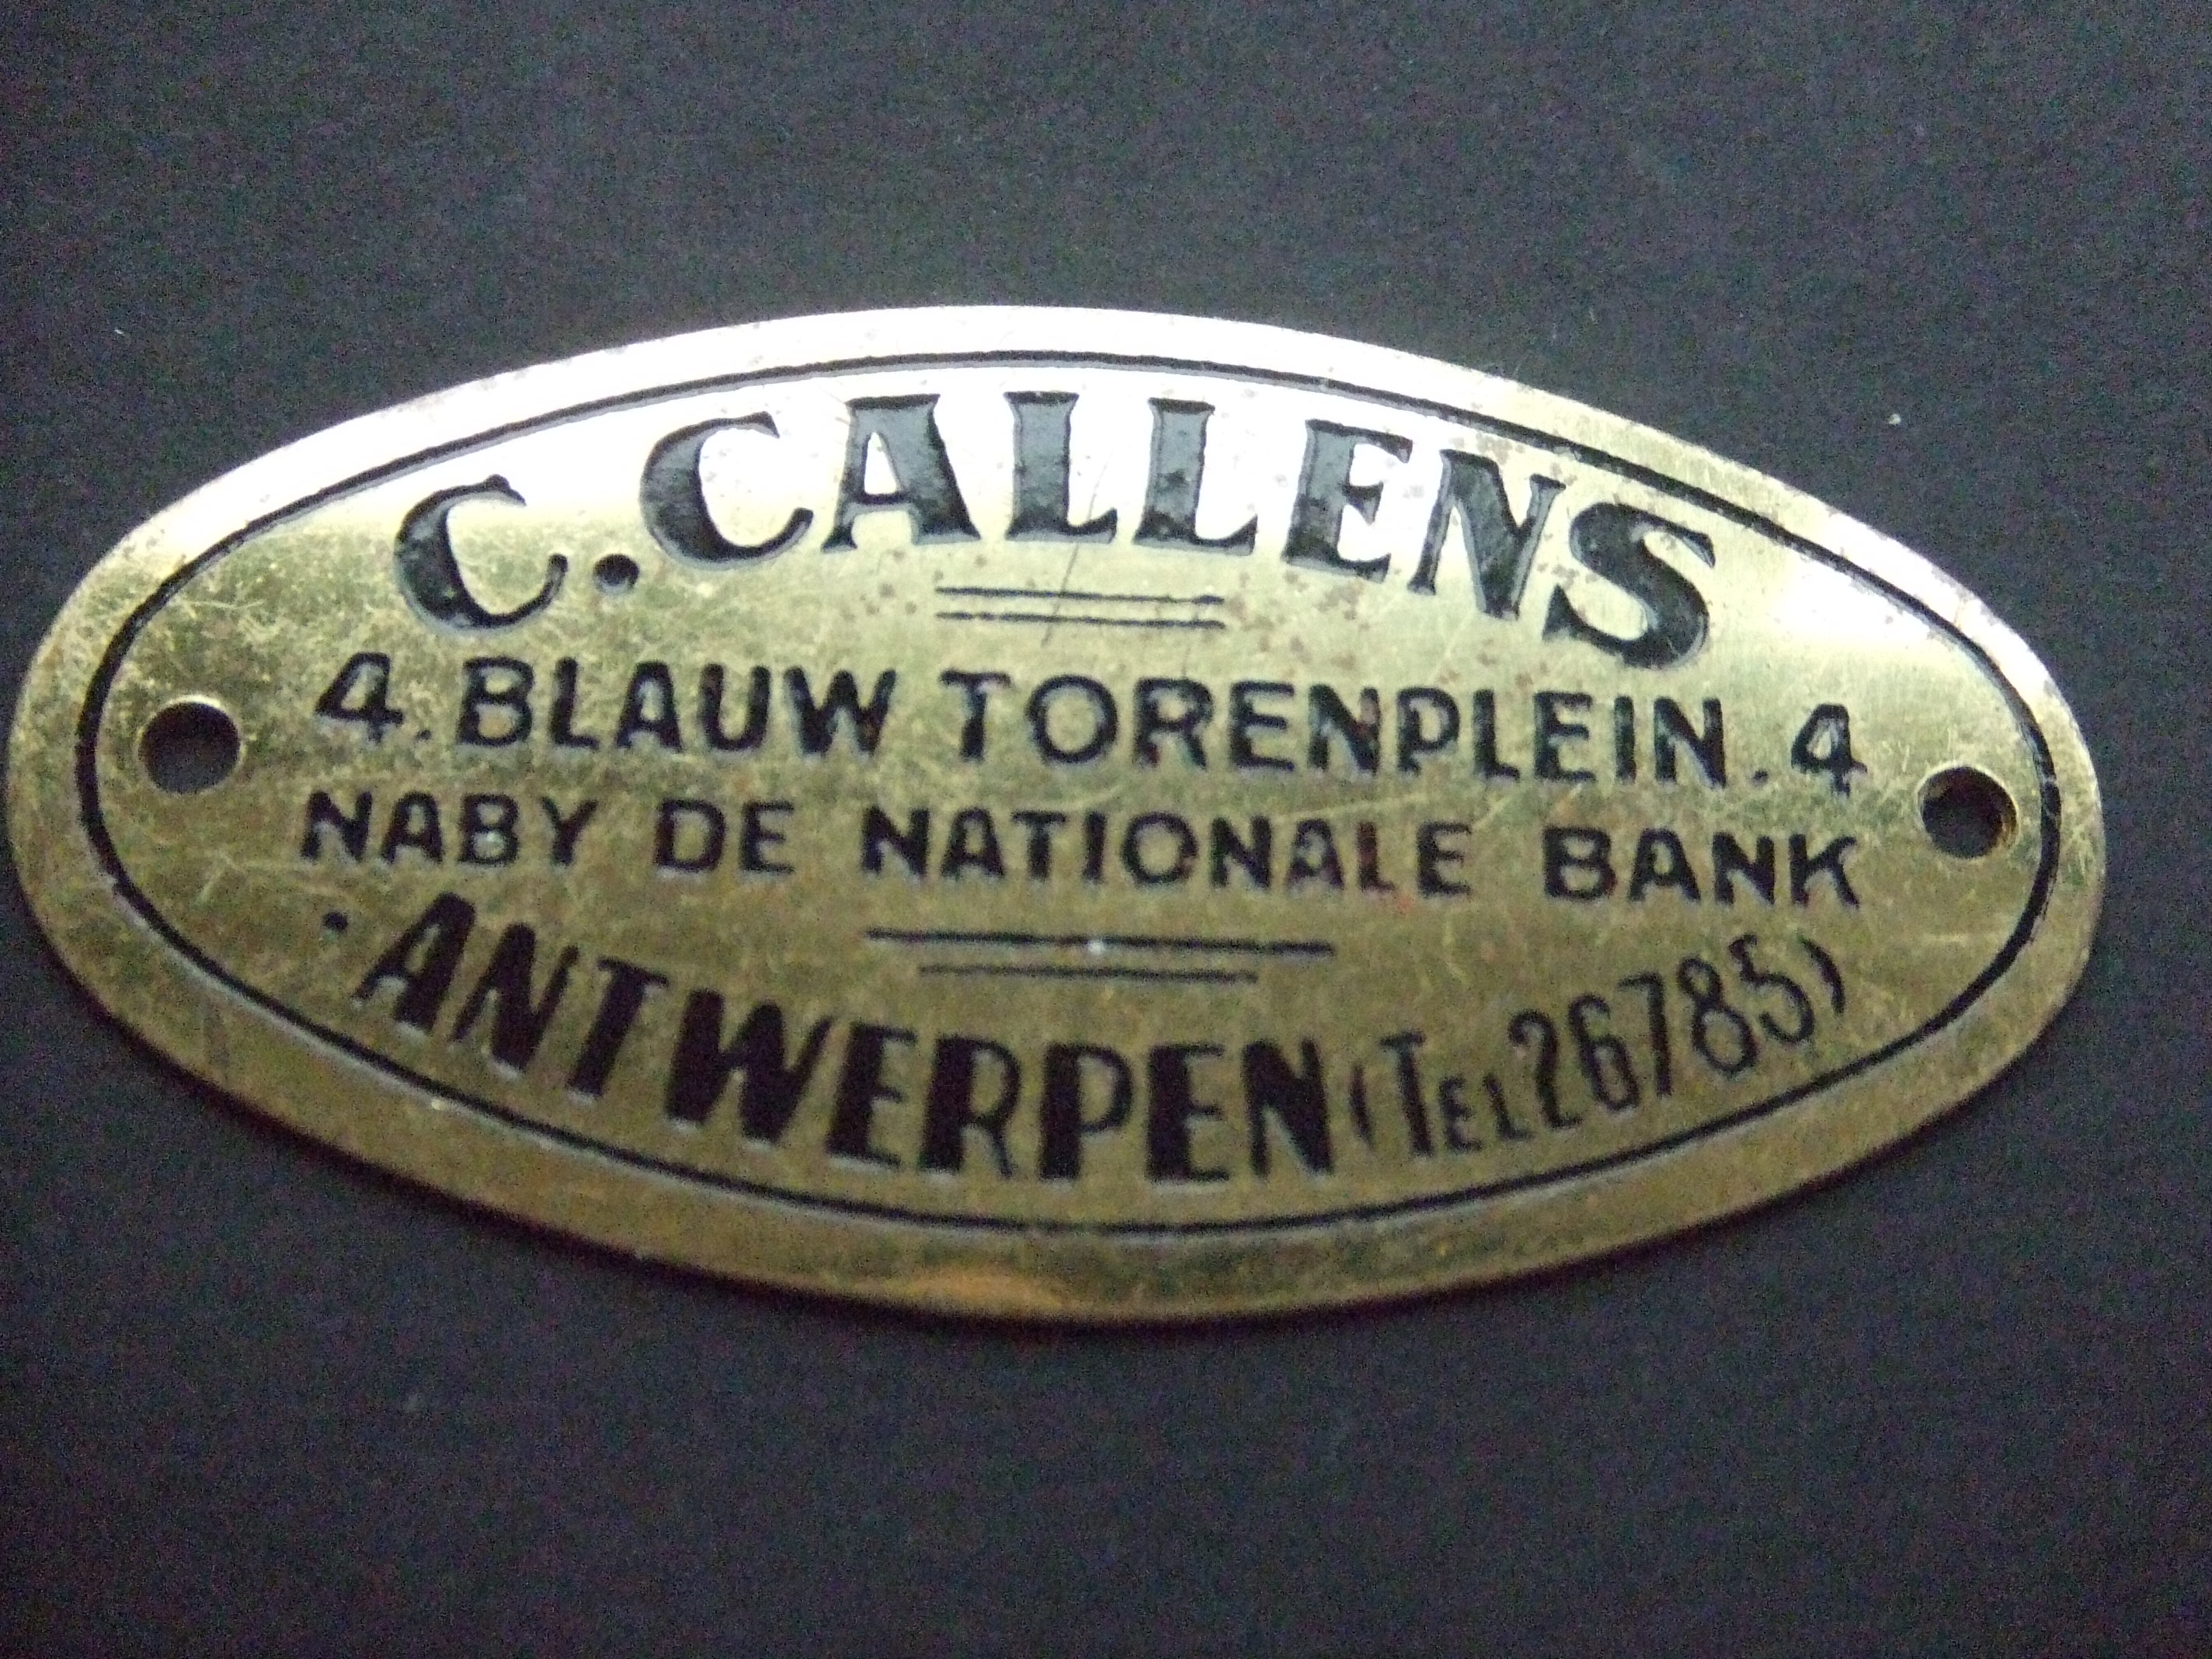 C. Callens Antwerpen rijwielhandel oud plaatje